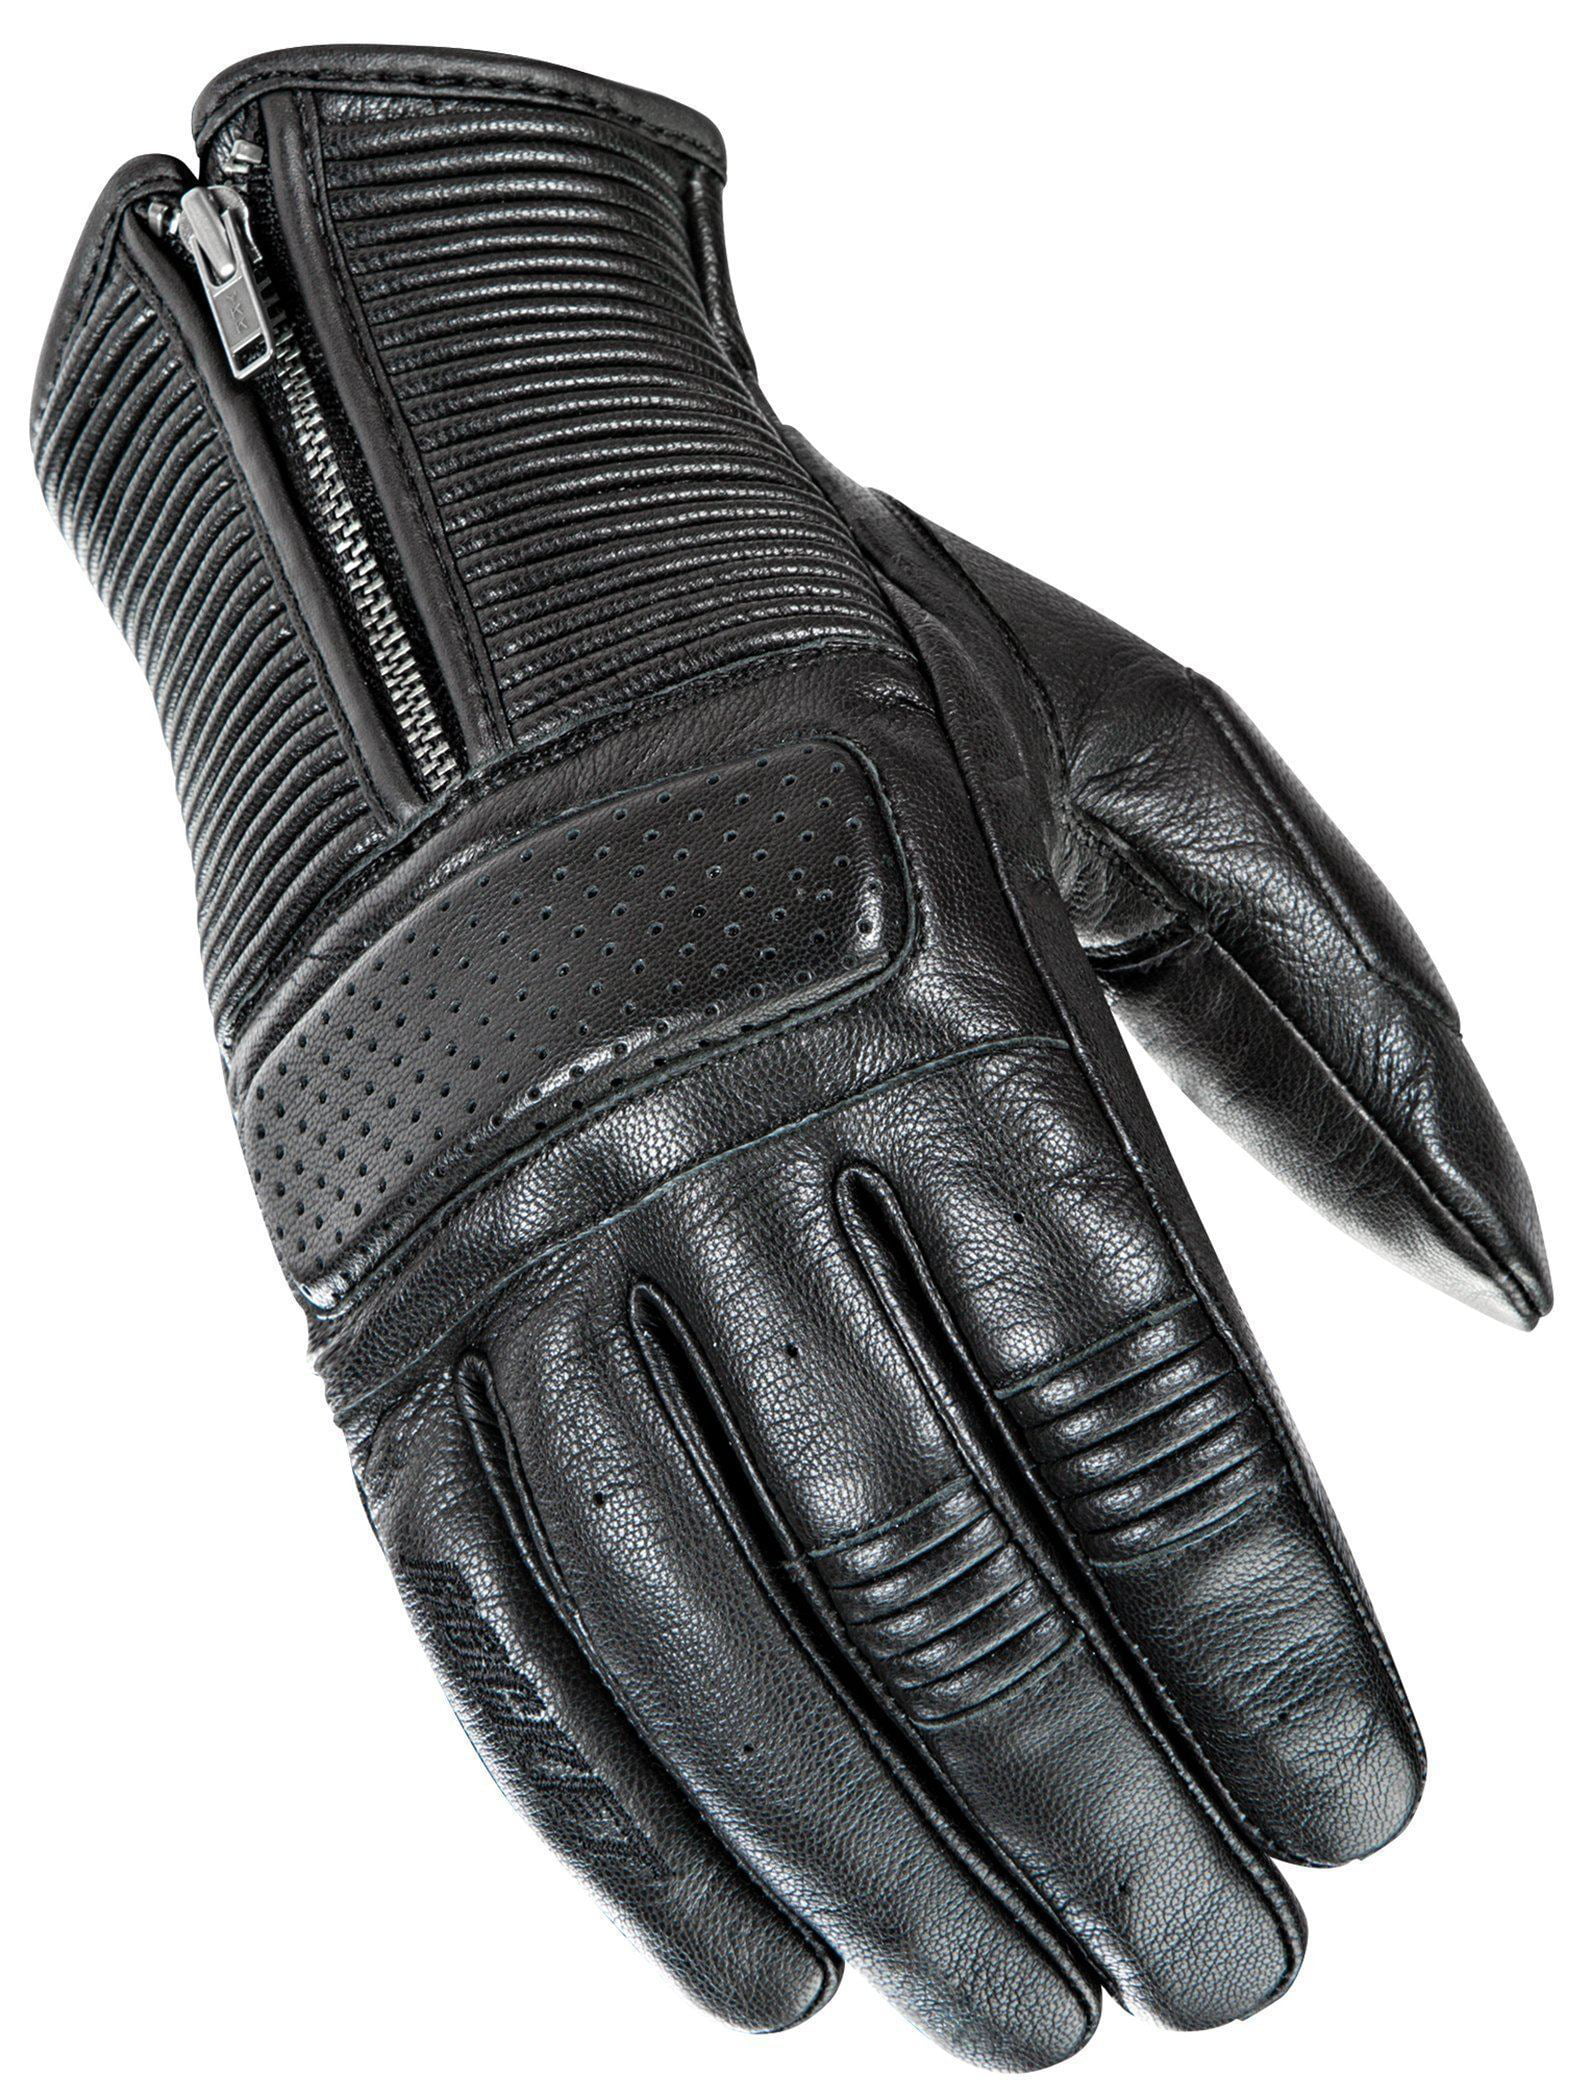 Joe Rocket Cafe Racer Mens On-Road Motorcycle Leather Gloves Black 2X-Large